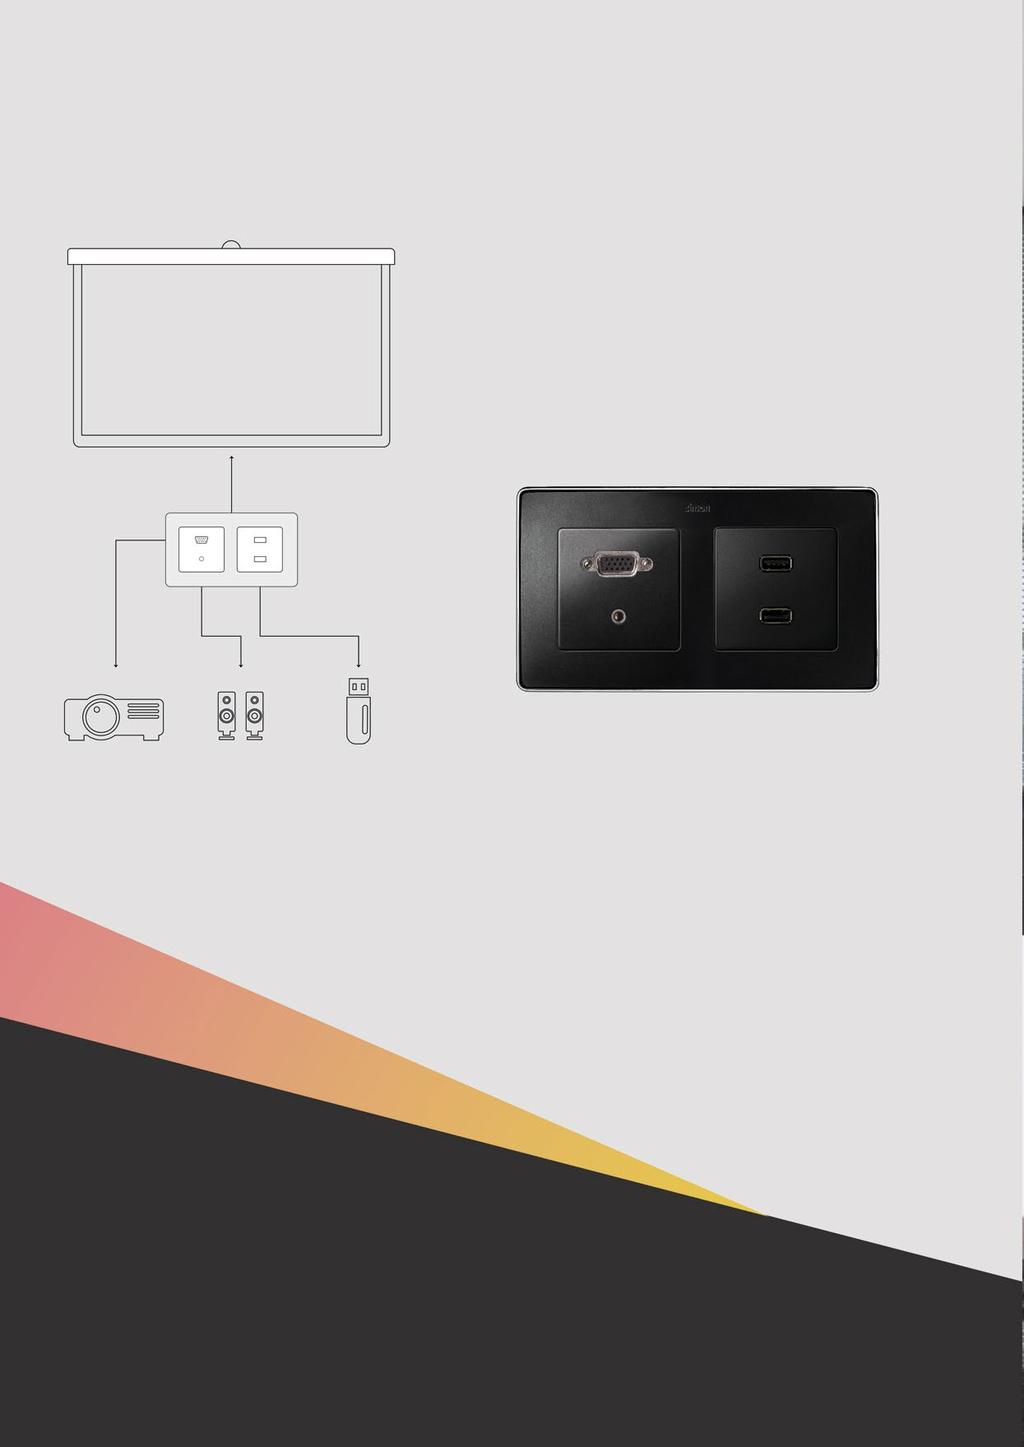 ROZWIĄZANIA DLA BIURA VGA Mini-jack USB prezentacje, dokumenty, filmy Gniazda